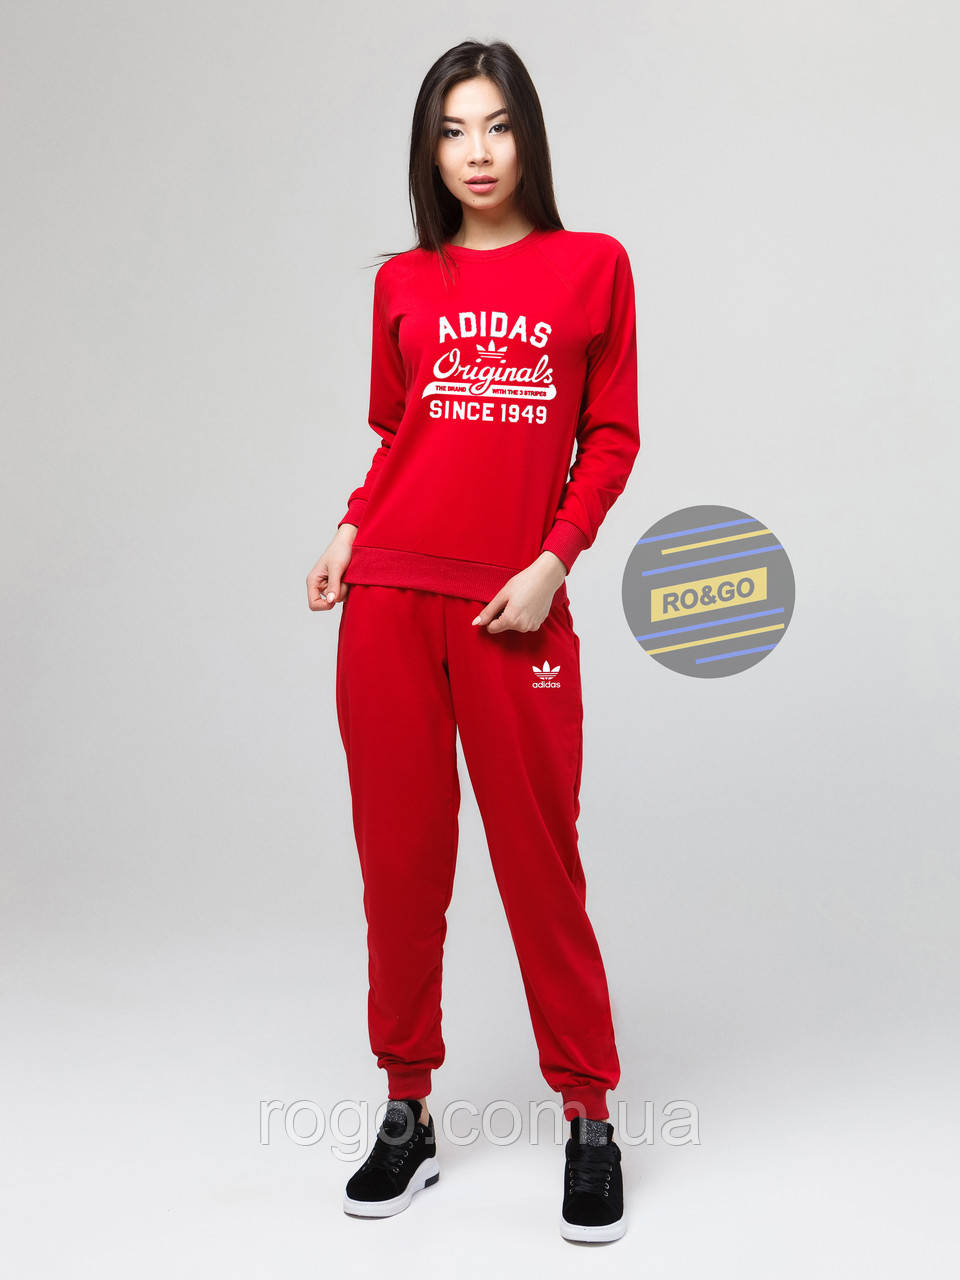 Женский спортивный костюм Adidas originals, адидас